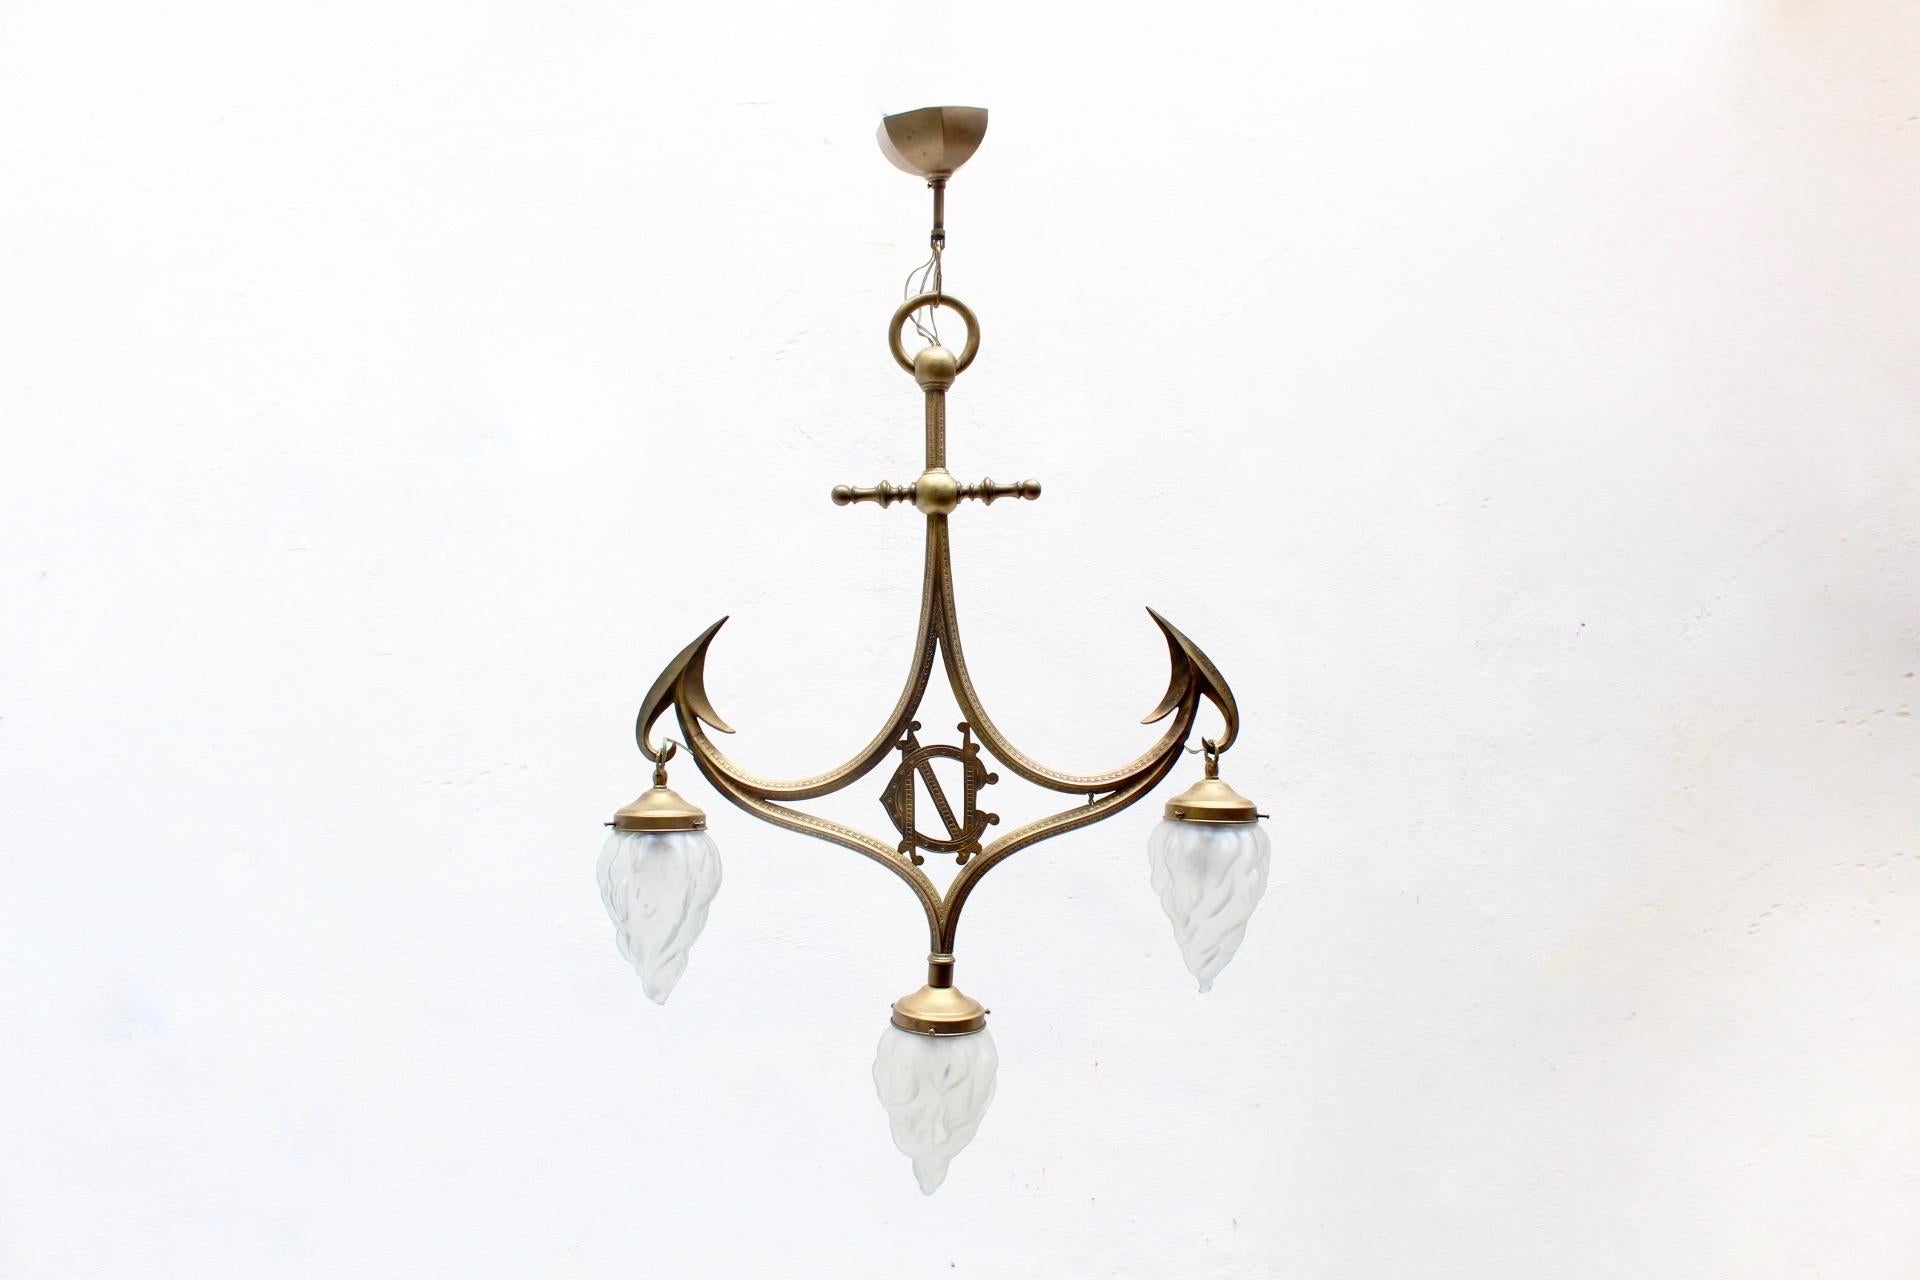 Art Nouveau Gothic Revival Brass & Glass 3-Light Pendant Lamp, 1910s For Sale 3